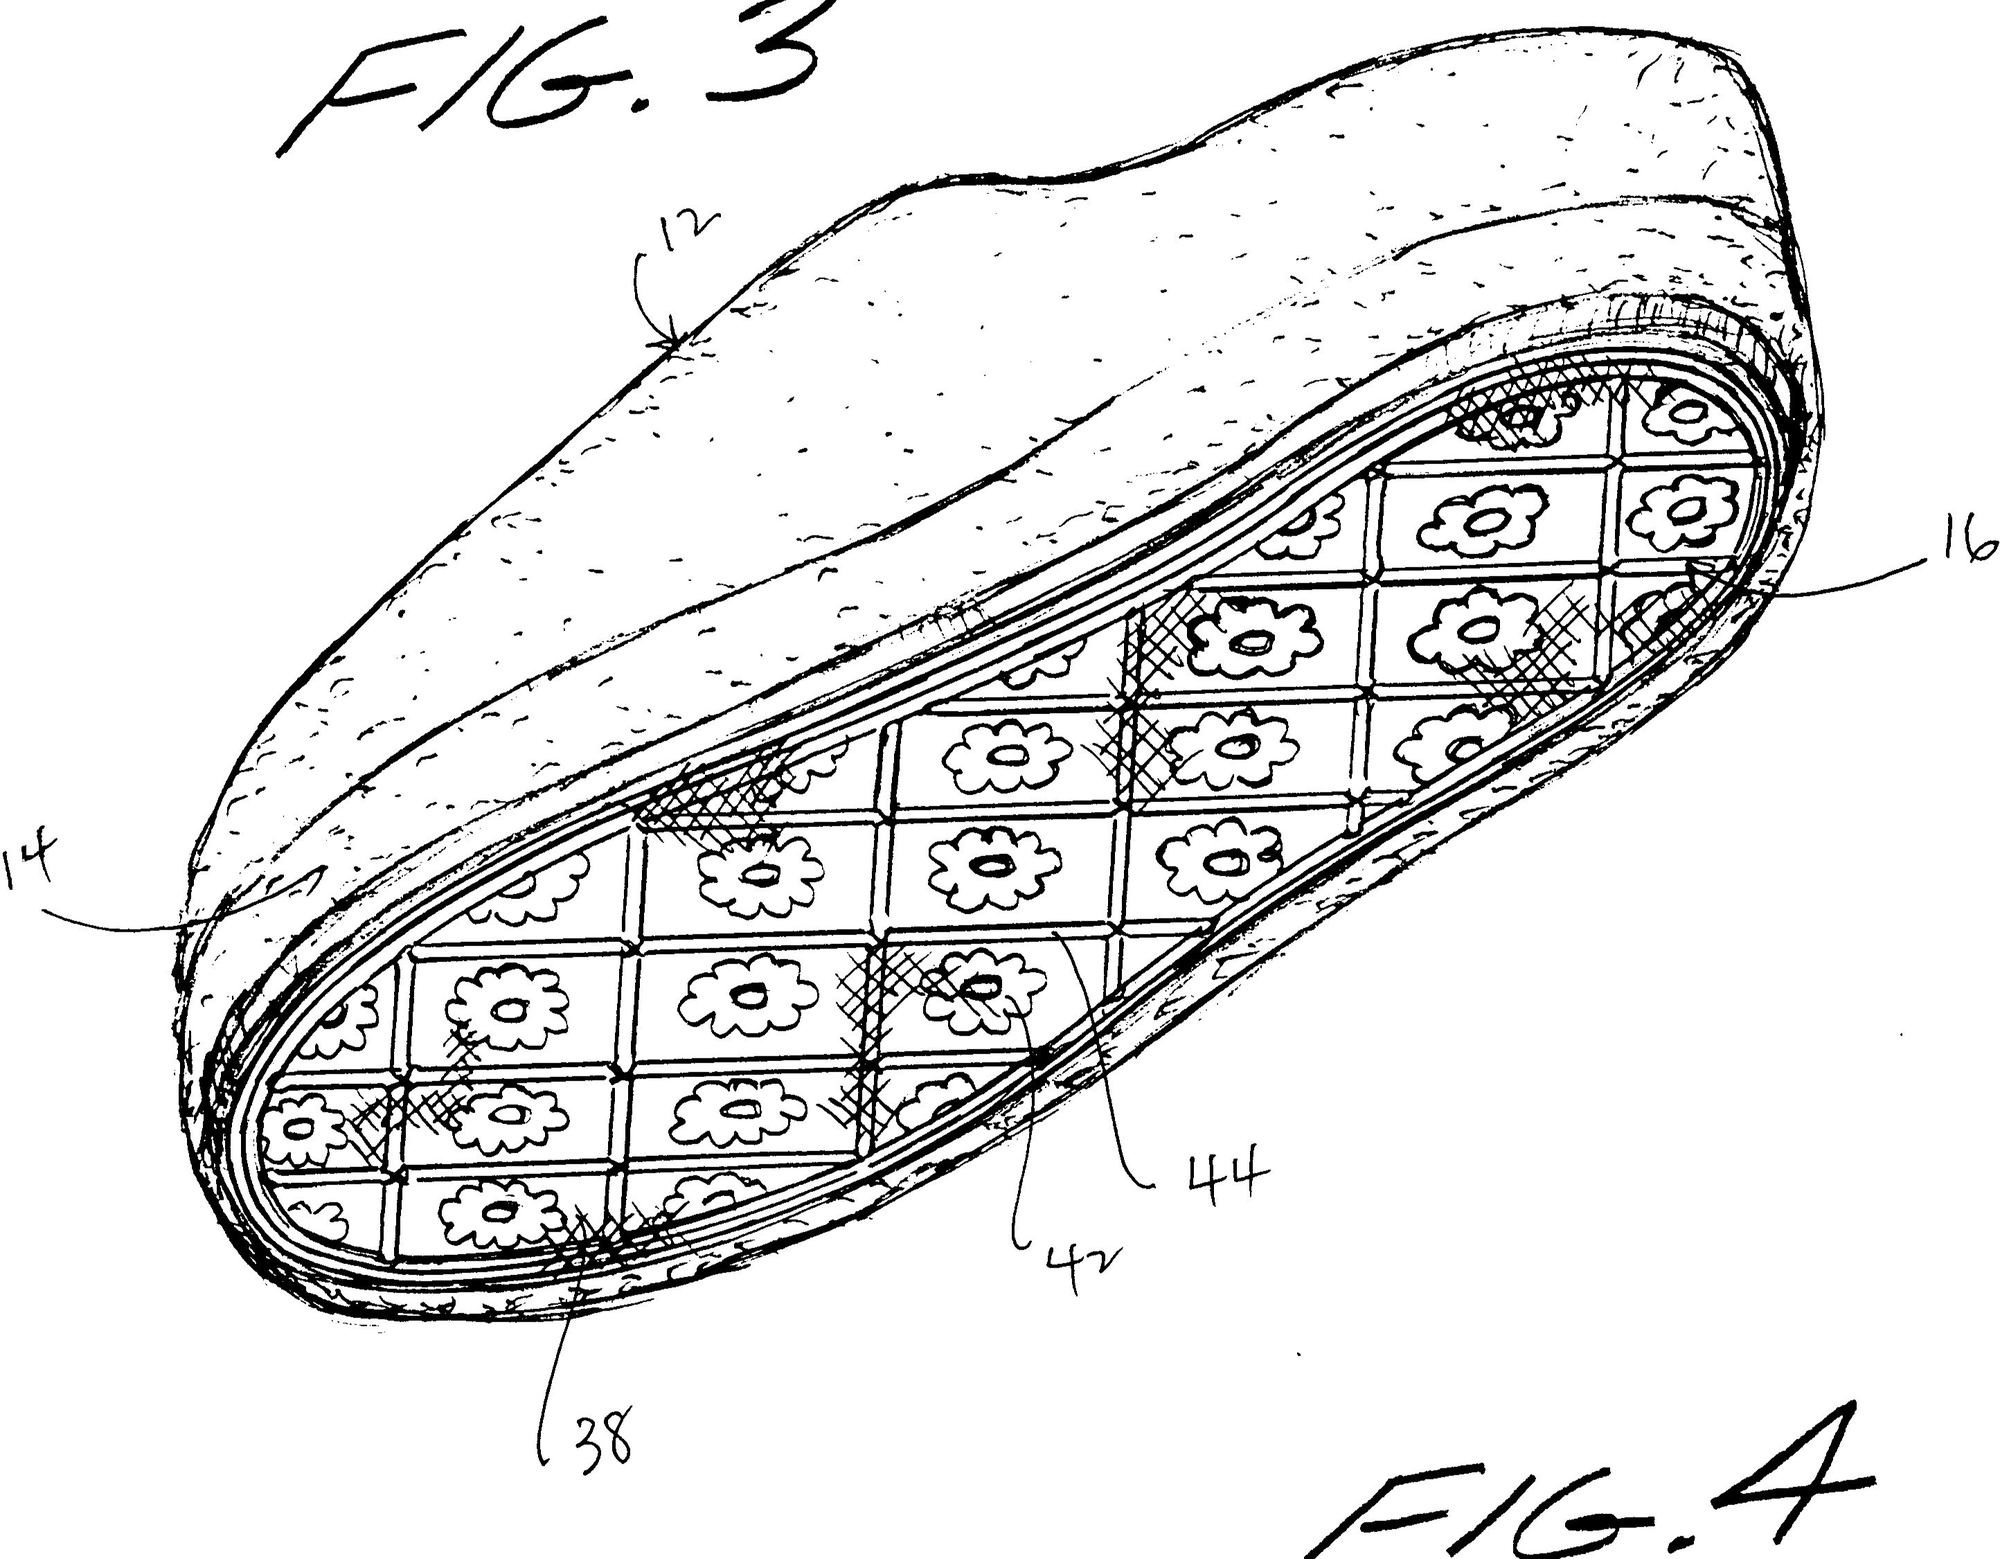 Đế giày Converse có thiết kế rất đặc biệt, nhưng lý do thì chắc chắn bạn không tưởng tượng ra - Ảnh 2.